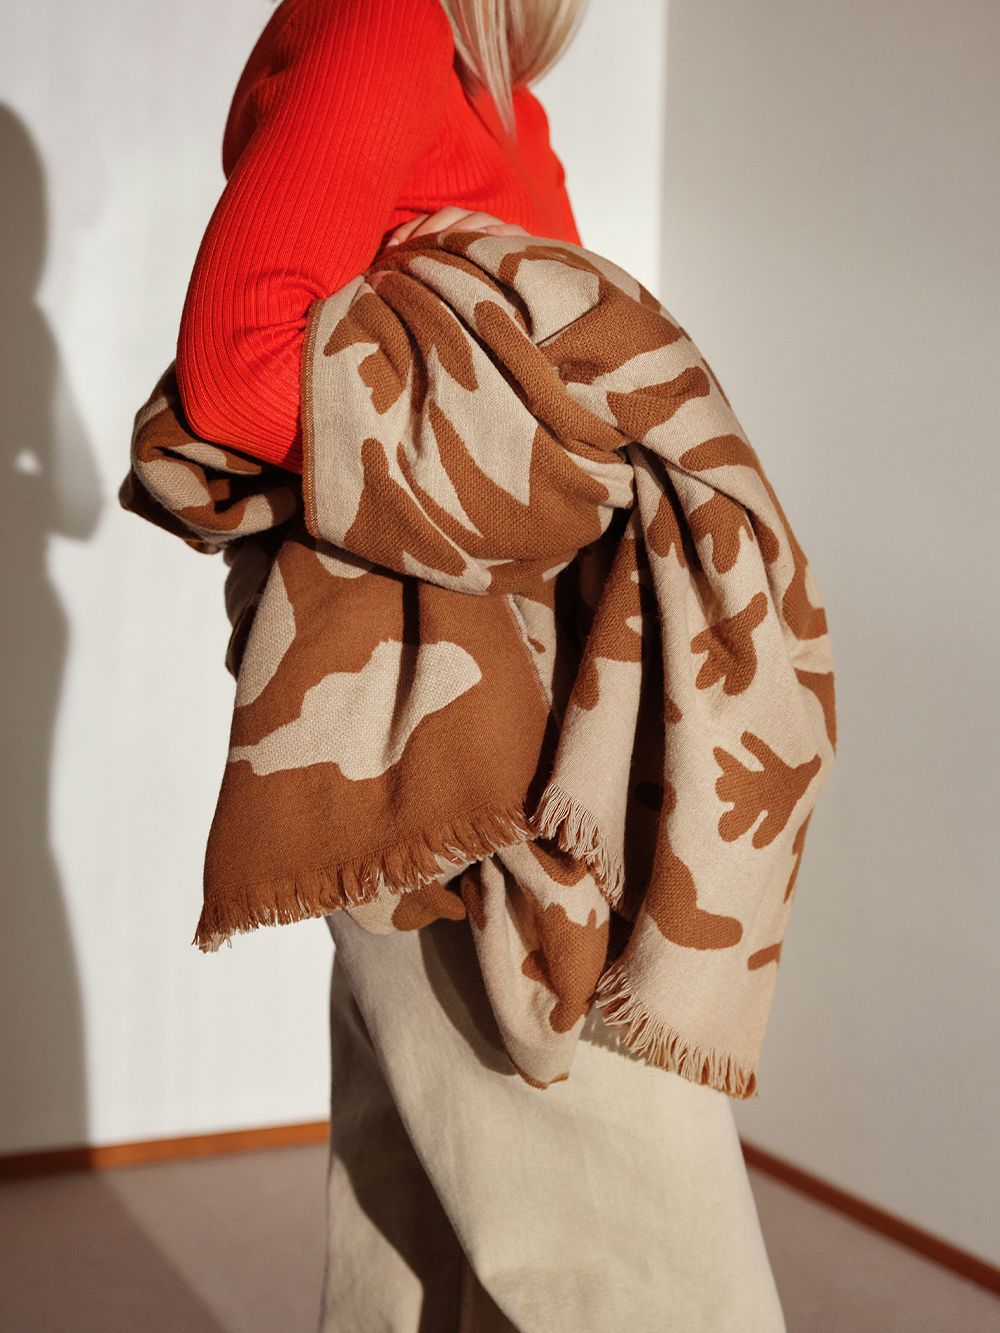 Iittala OTC Cheetah blanket, brown